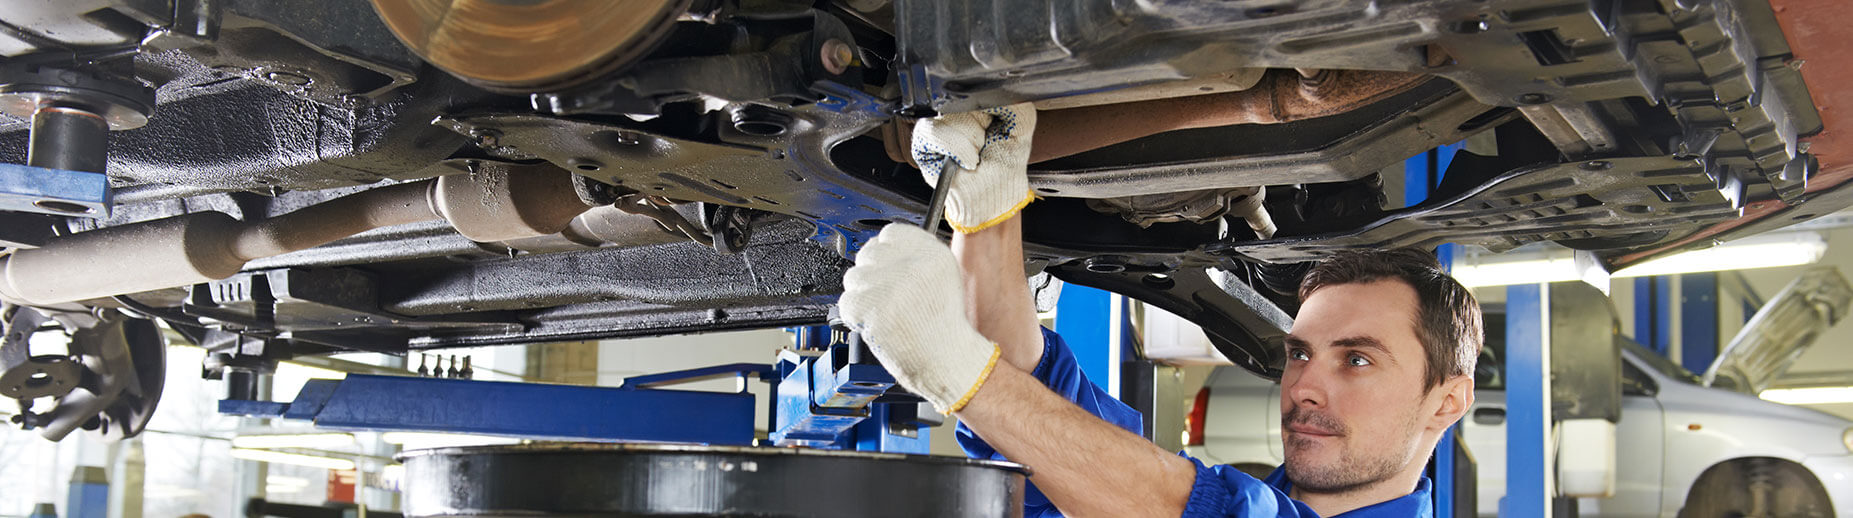 Richmond Auto Mechanic, Brake Repair and Auto Repair